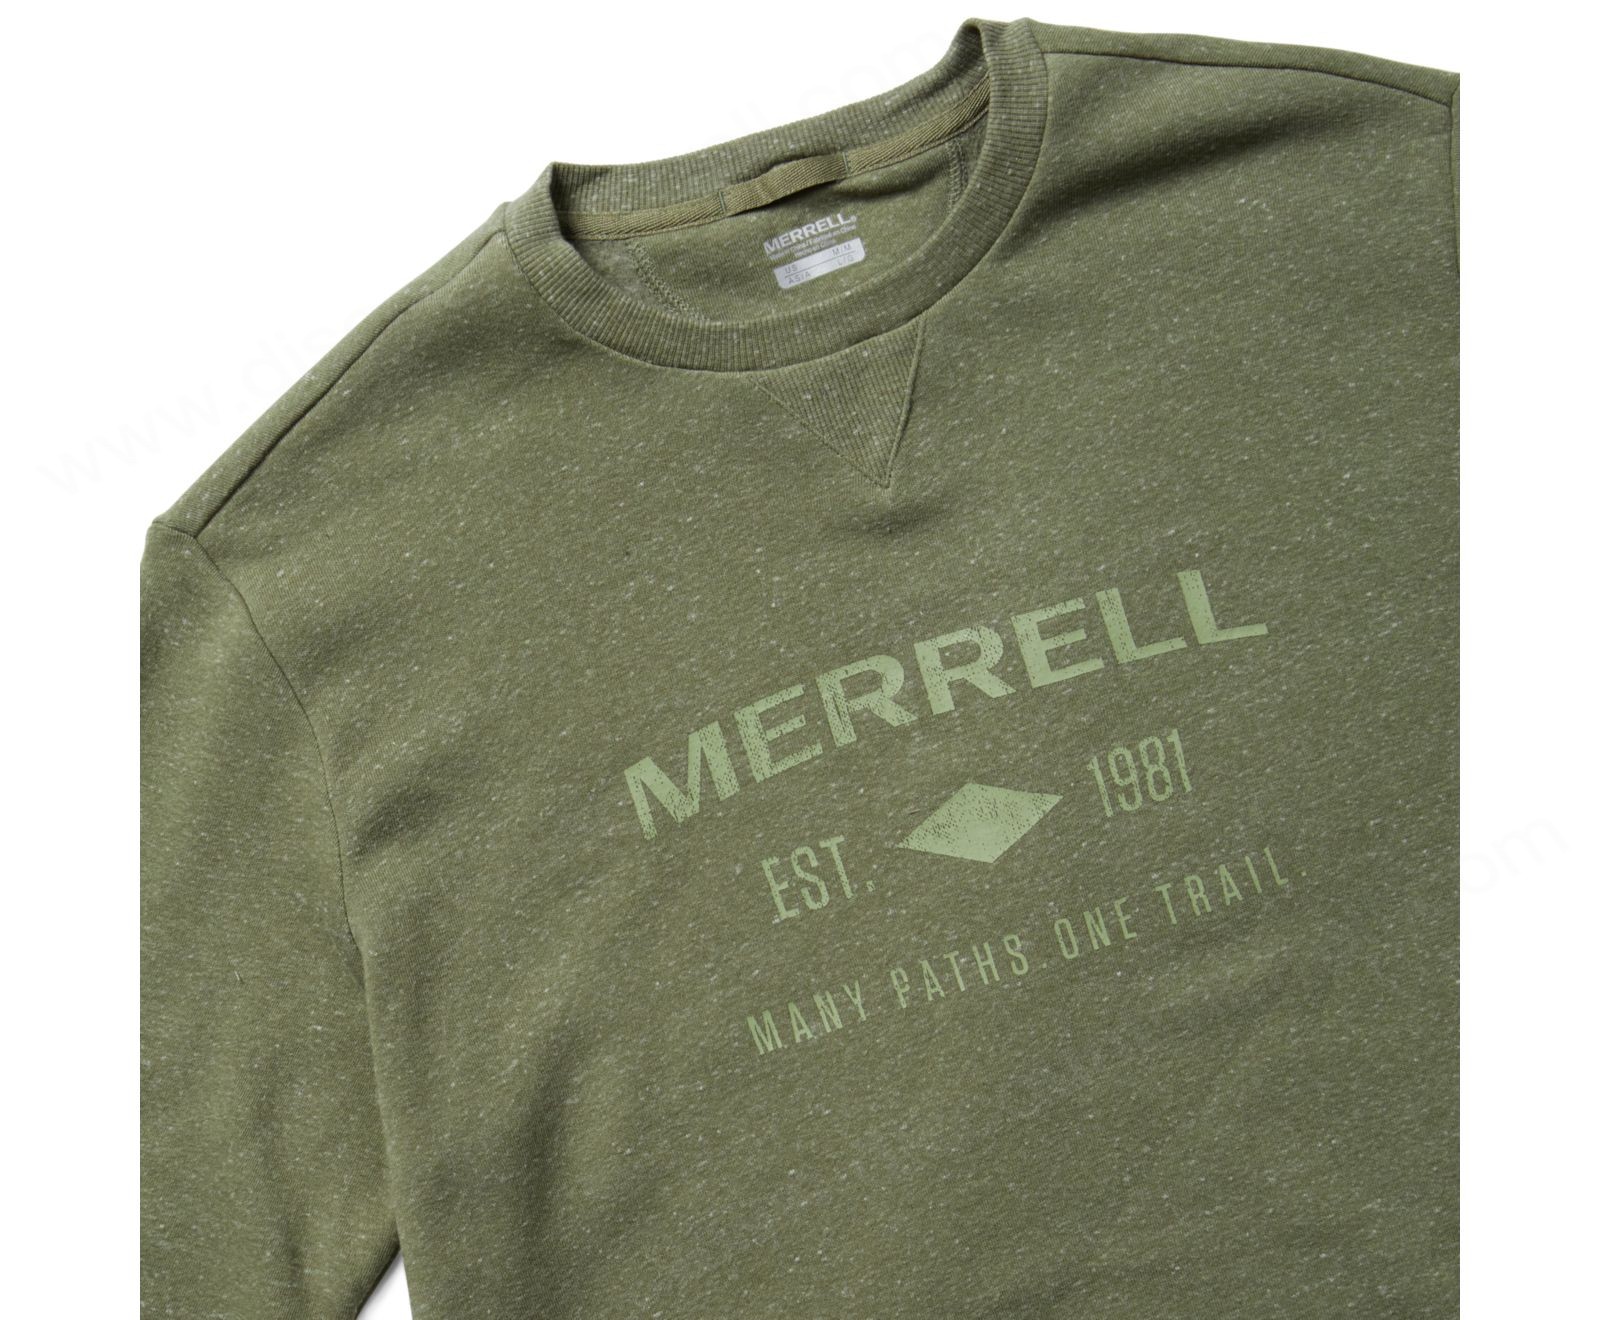 Merrell - Men's Merrell Est 1981 Wordmark Crewneck Pullover - Merrell - Men's Merrell Est 1981 Wordmark Crewneck Pullover